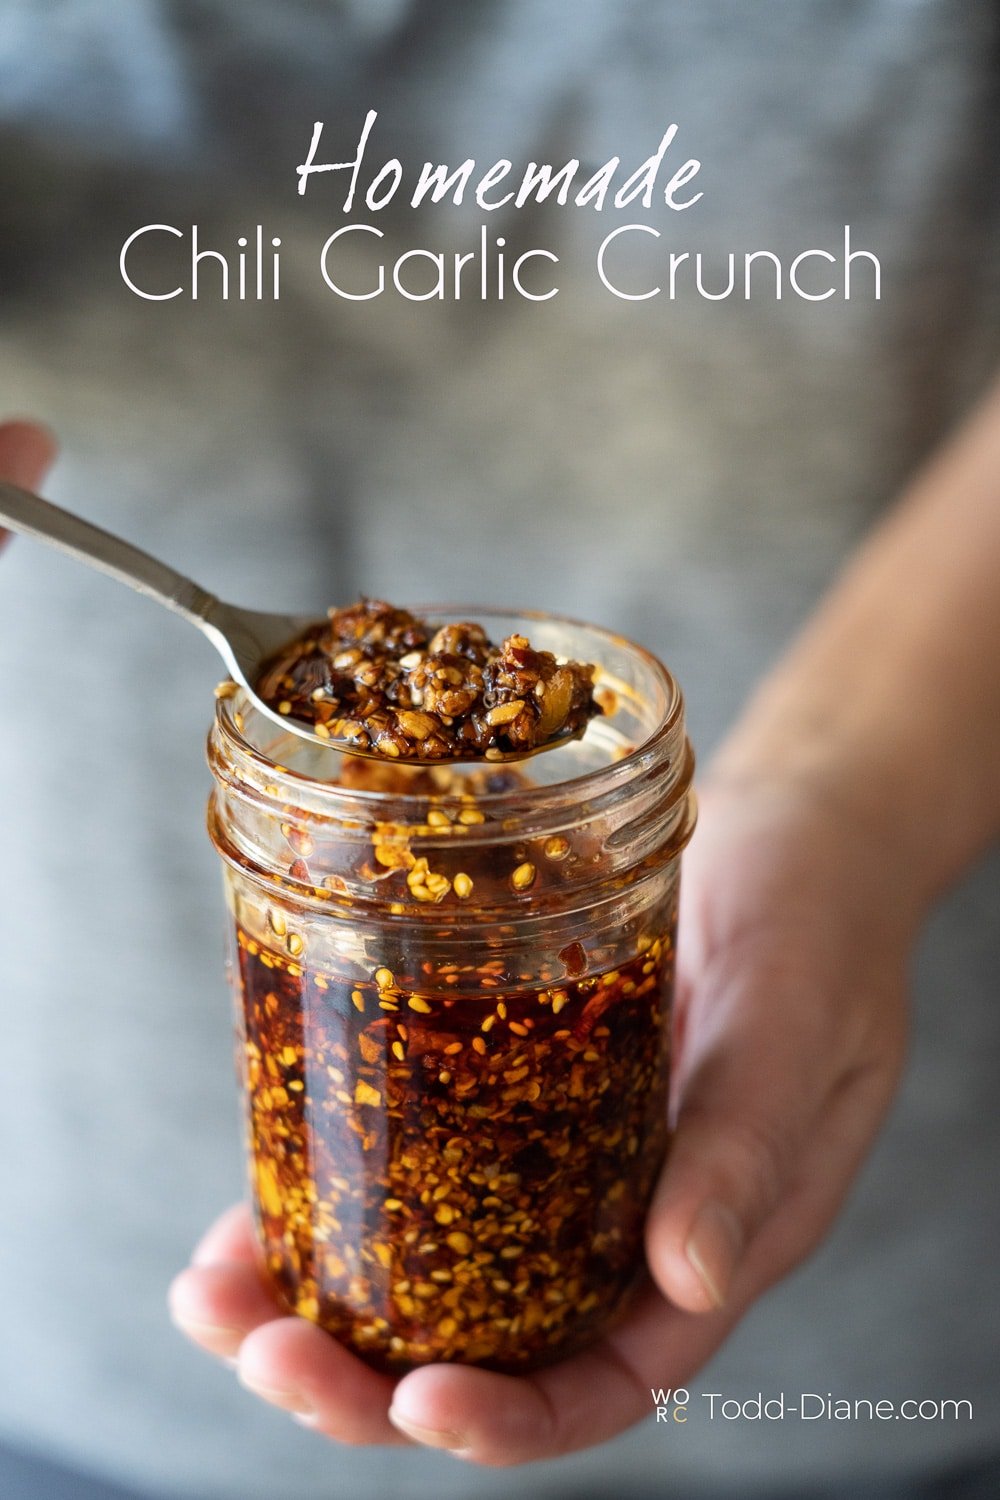 Easy Chili Oil Recipe - How To Make Chili Oil